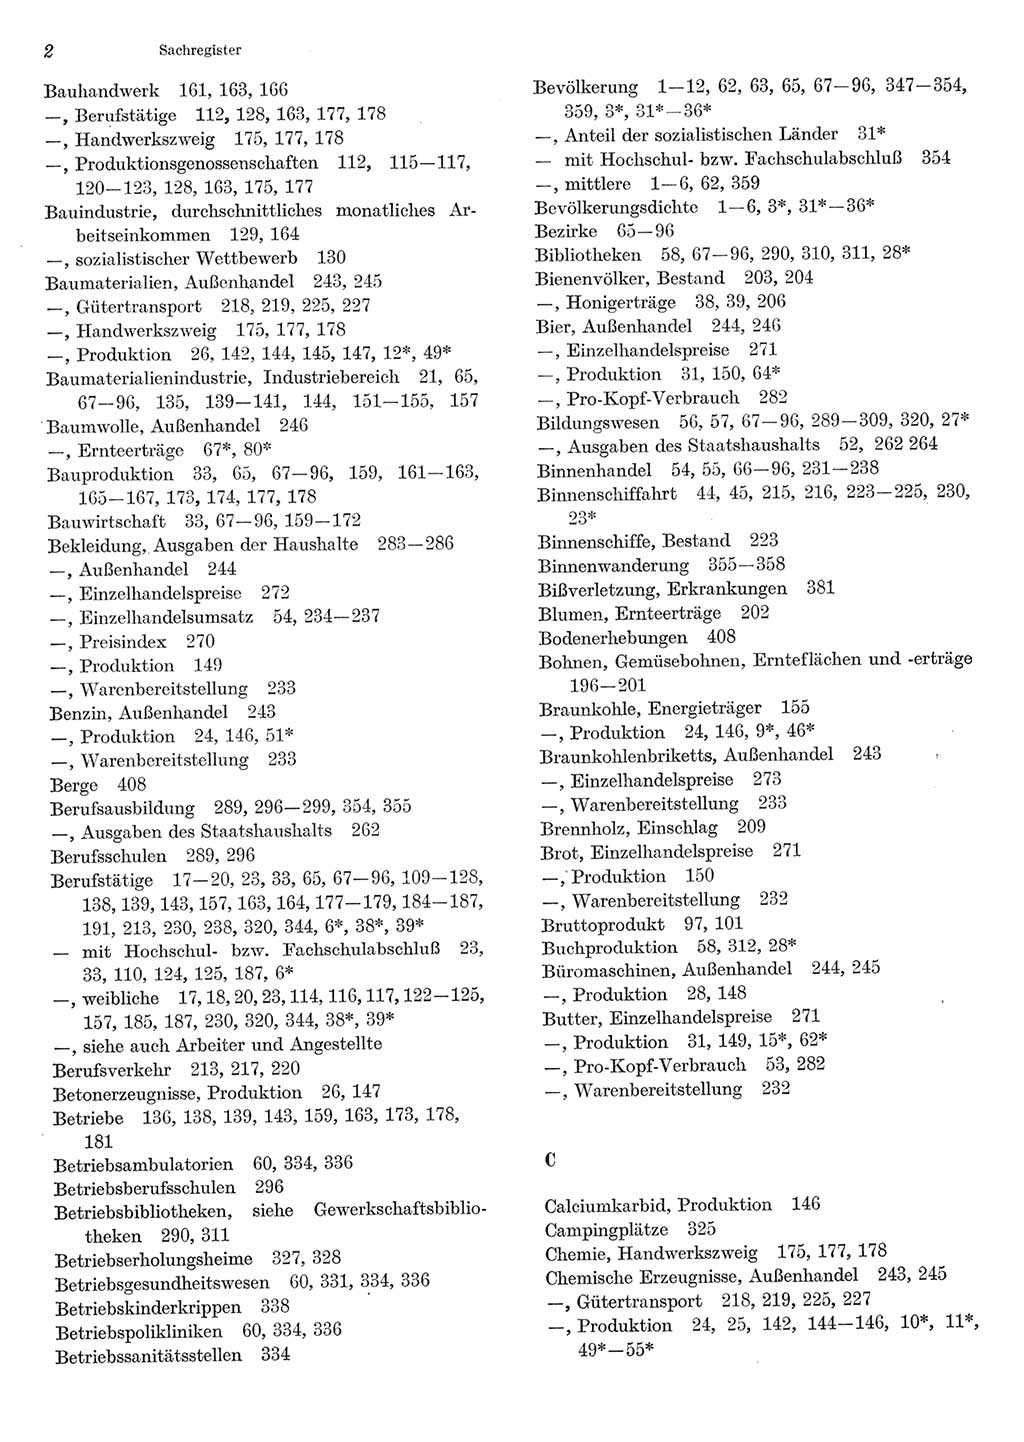 Statistisches Jahrbuch der Deutschen Demokratischen Republik (DDR) 1985, Seite 2 (Stat. Jb. DDR 1985, S. 2)